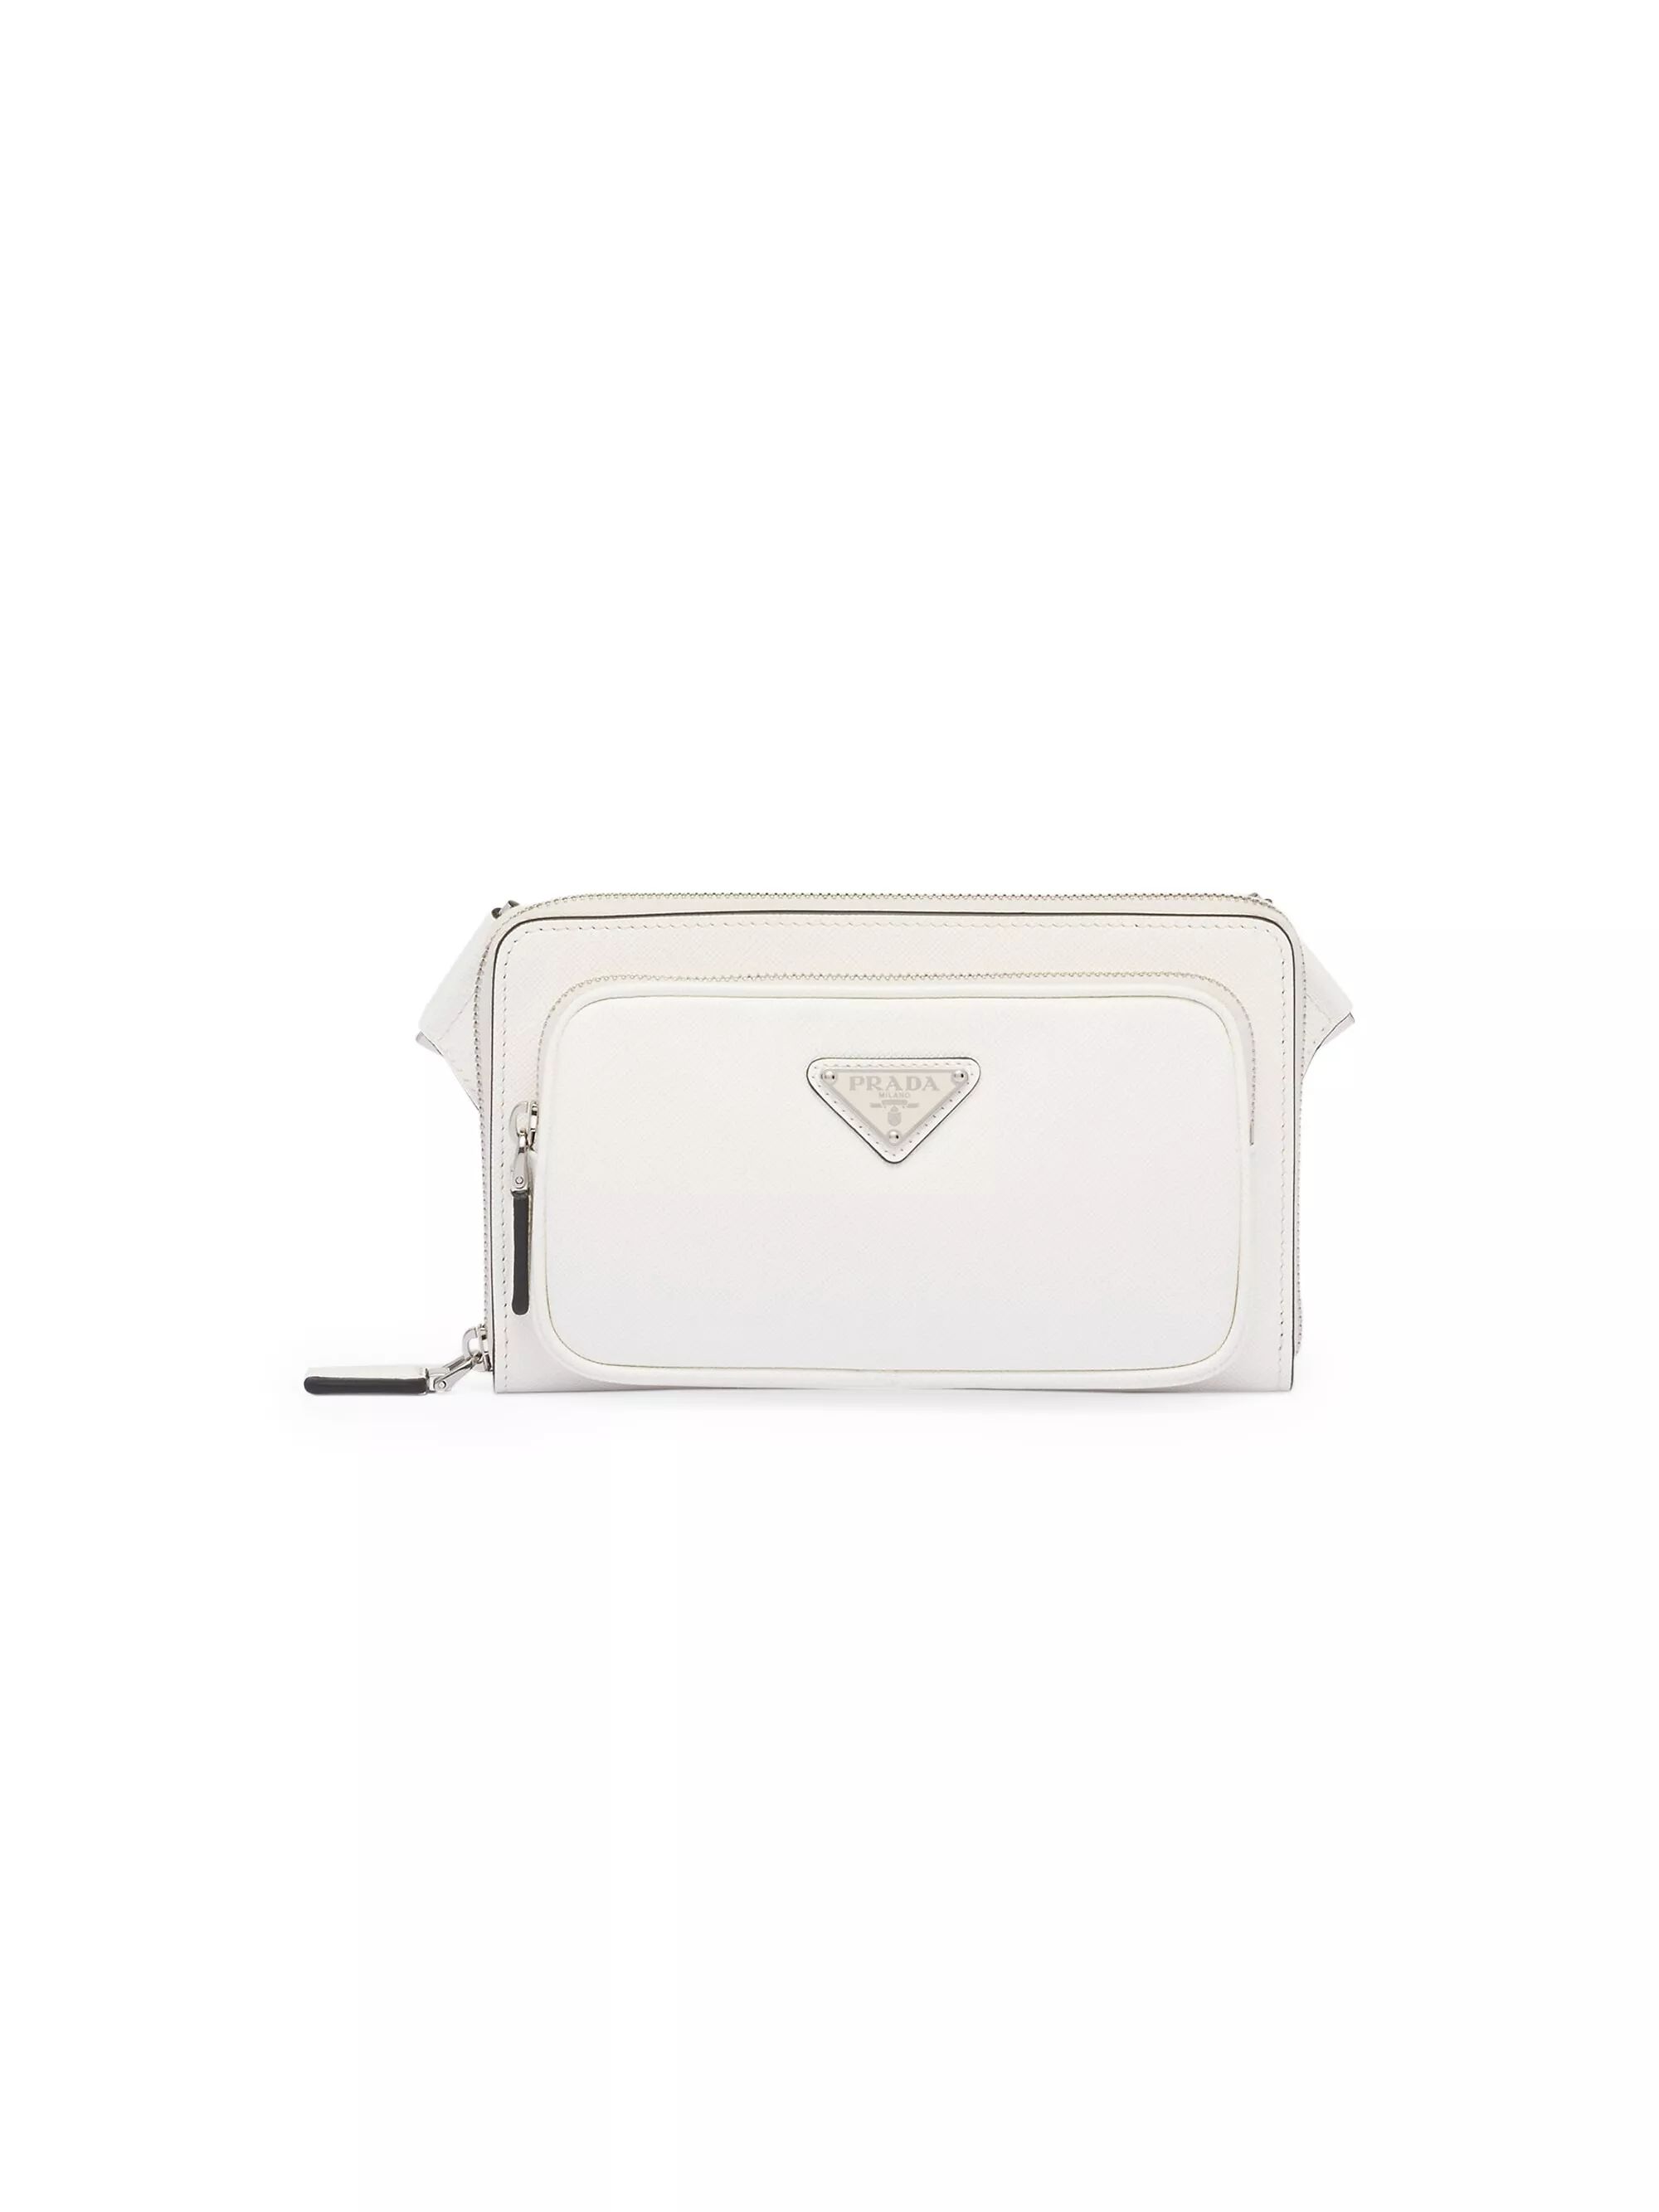 Shop Prada Saffiano Leather Belt Bag | Saks Fifth Avenue | Saks Fifth Avenue